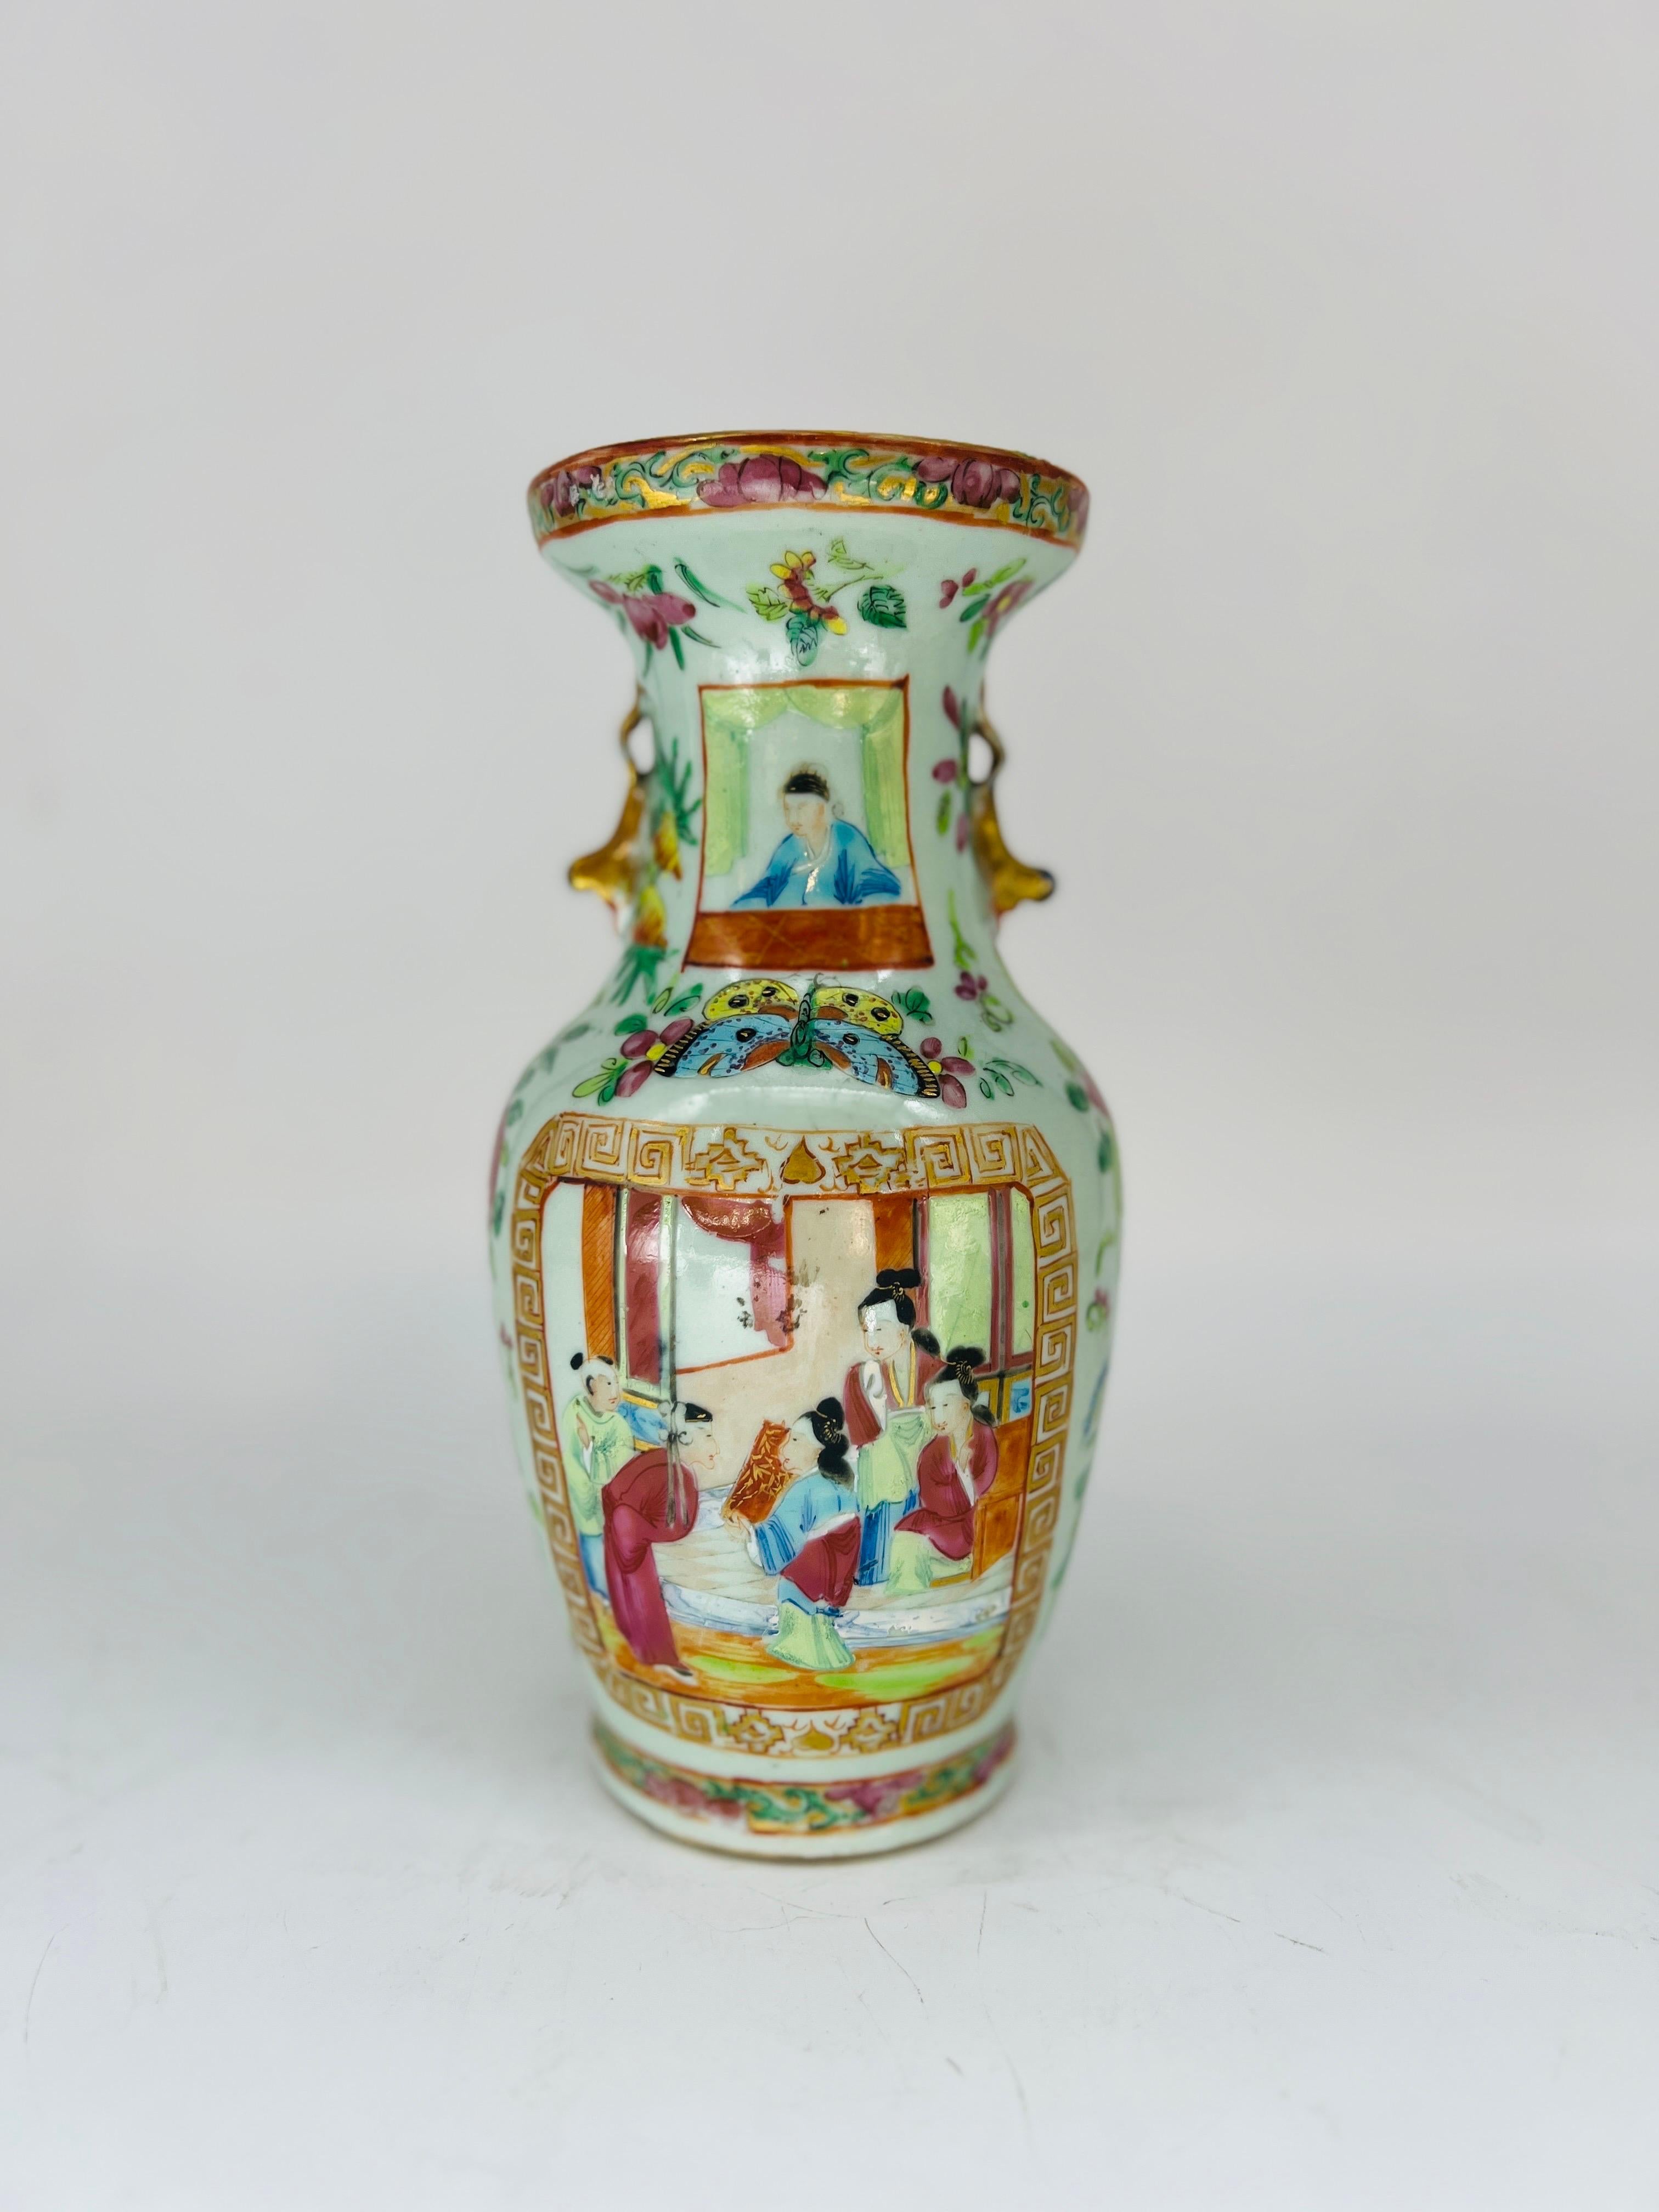 Chinesisch, 19. Jahrhundert.

Es handelt sich um eine sehr ungewöhnliche chinesische Vase in traditioneller Form, mit Seladonglasur auf dem Korpus und dem beliebten Medaillonmuster der Famille Rose. Auf der einen Seite befindet sich ein Fenster mit